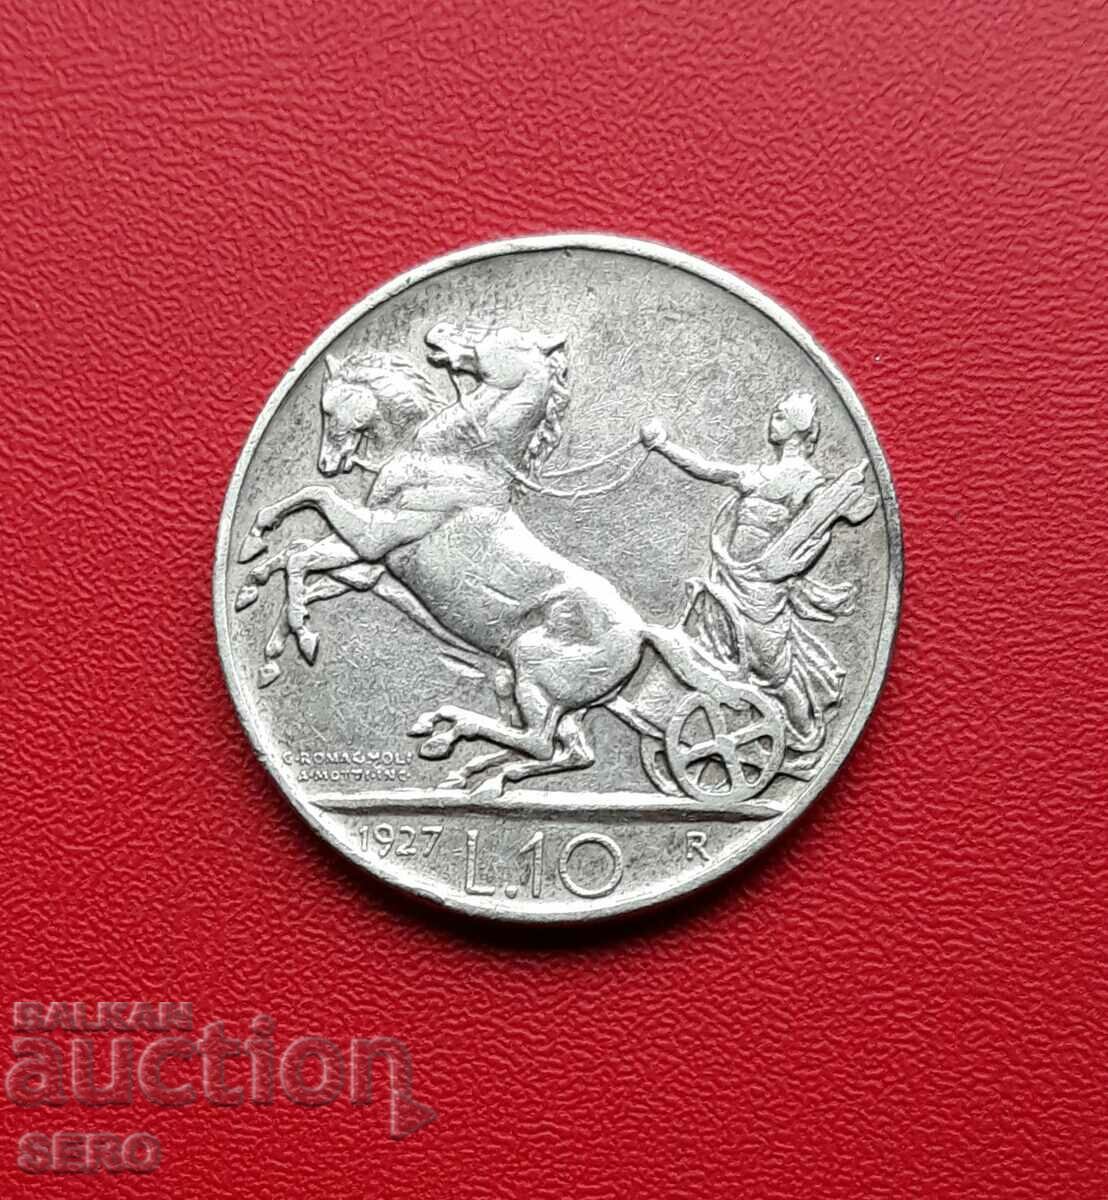 Ιταλία-10 λίρες 1927-ασήμι